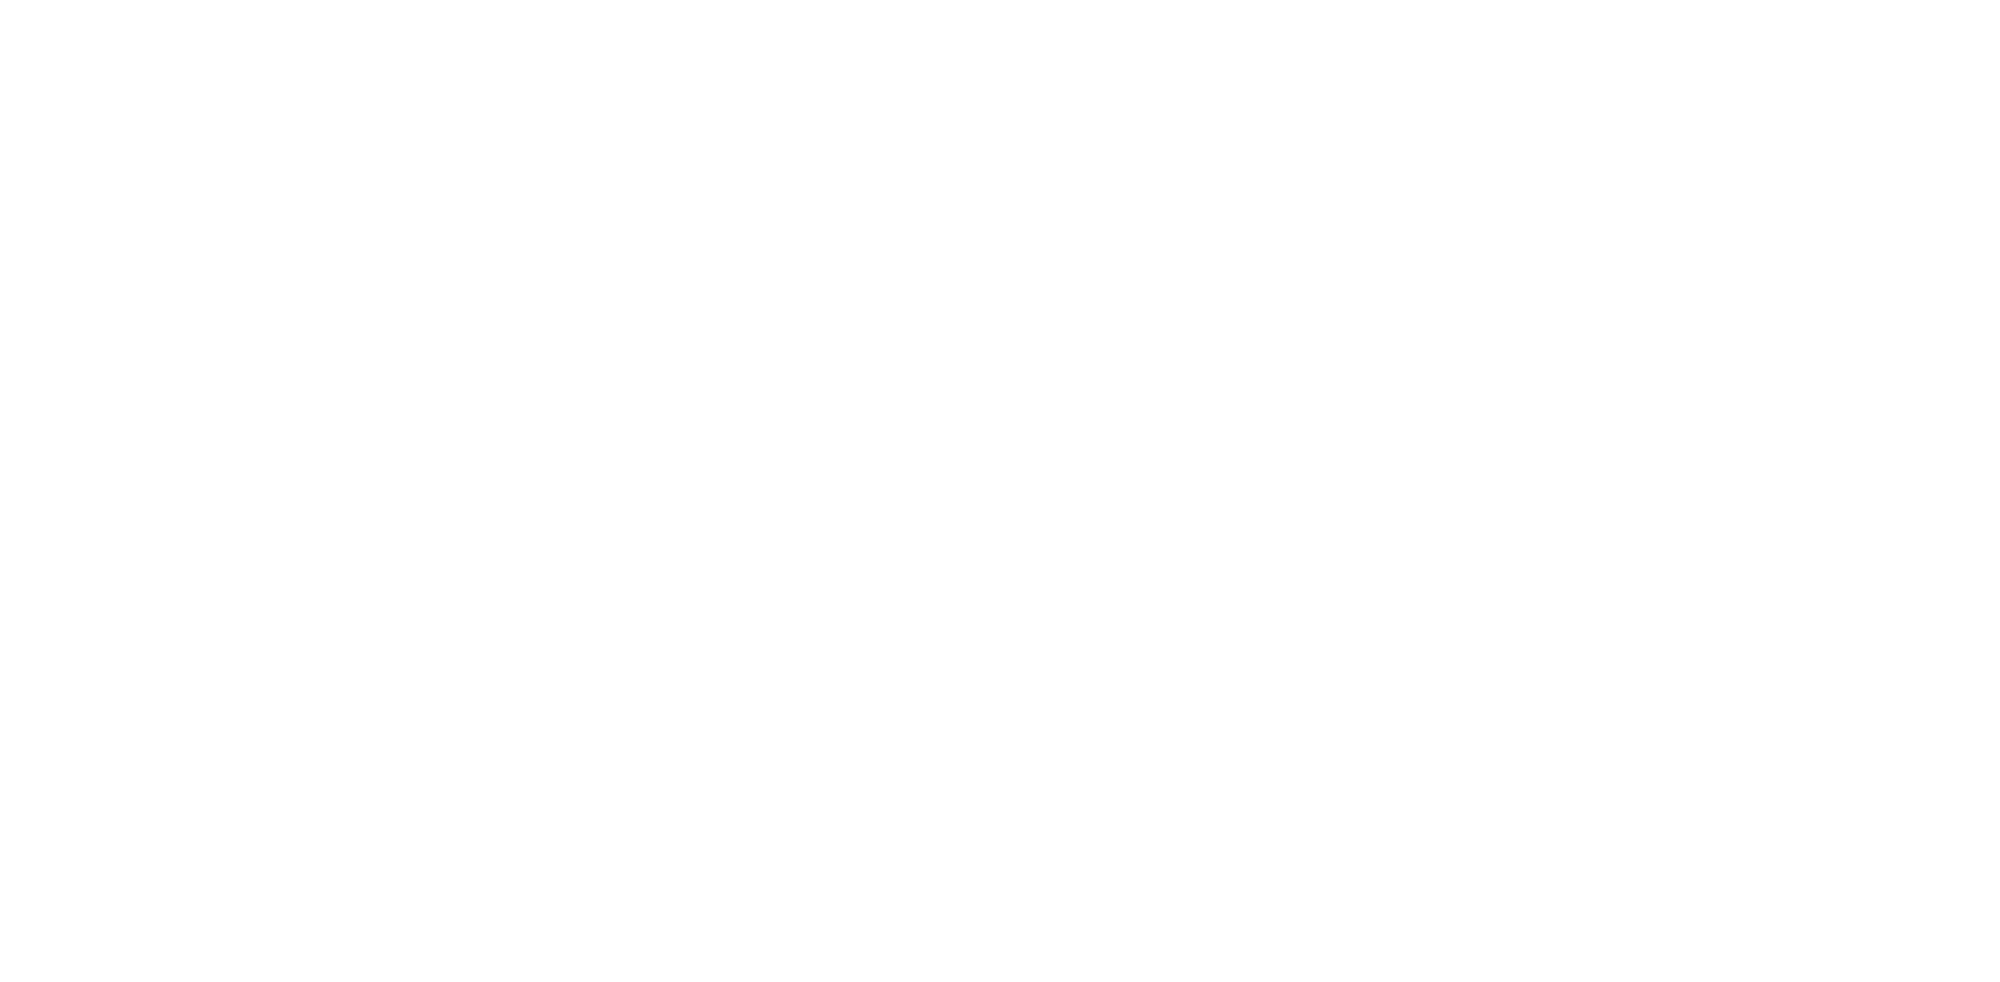 Frauenarztpraxis Heckmanns